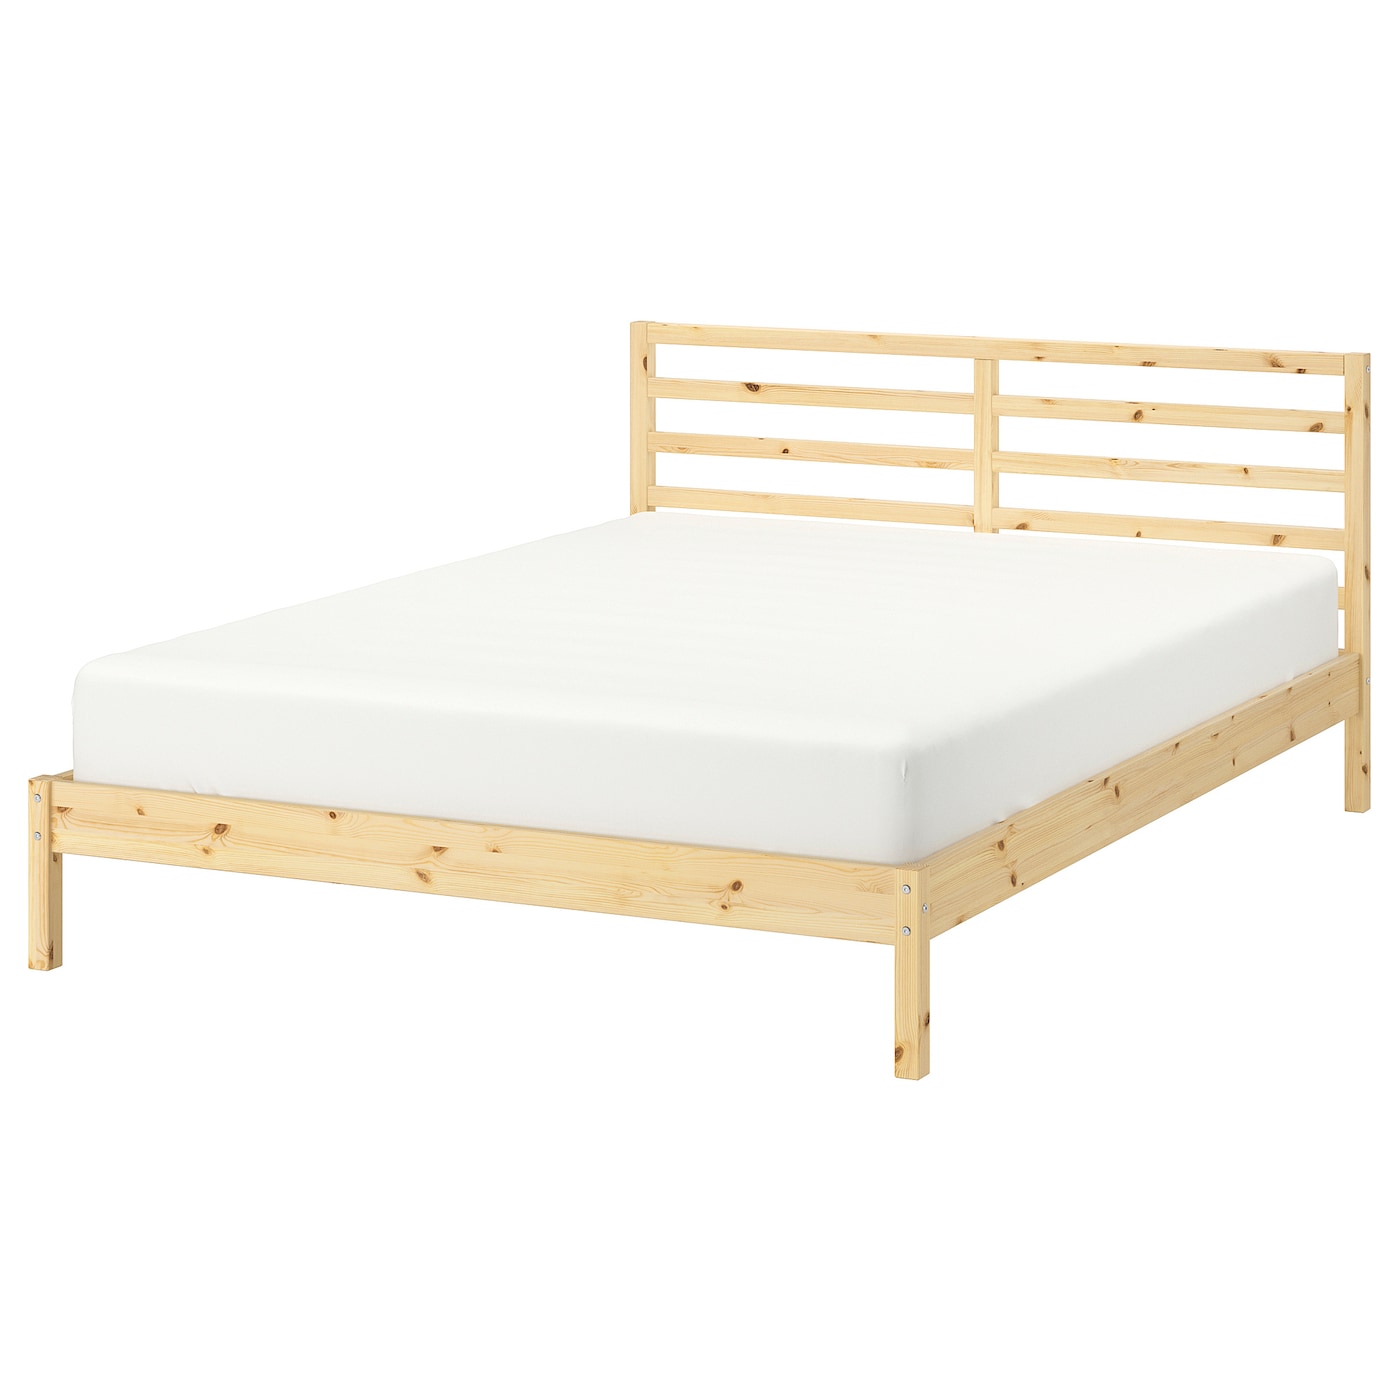 Двуспальная кровать - IKEA TARVA/LURÖY/LUROY, 200х140 см, сосна, ТАРВА/ЛУРОЙ ИКЕА